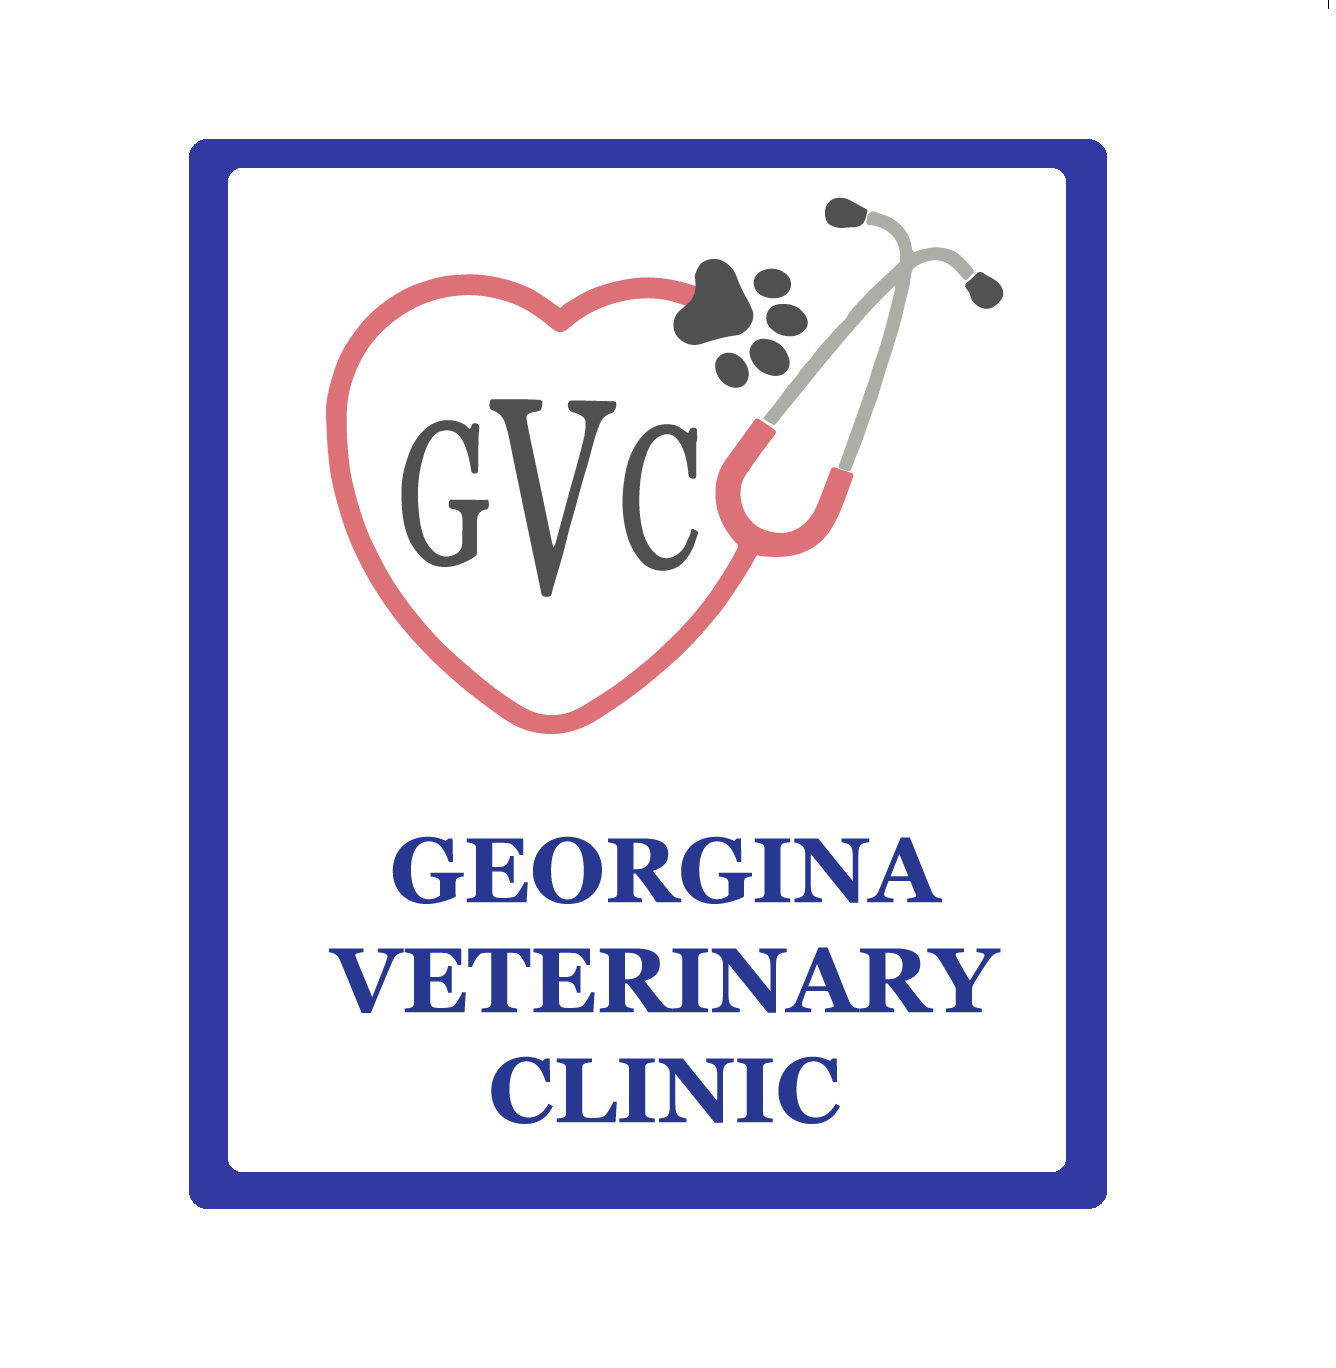 Georgina Veterinary Clinic